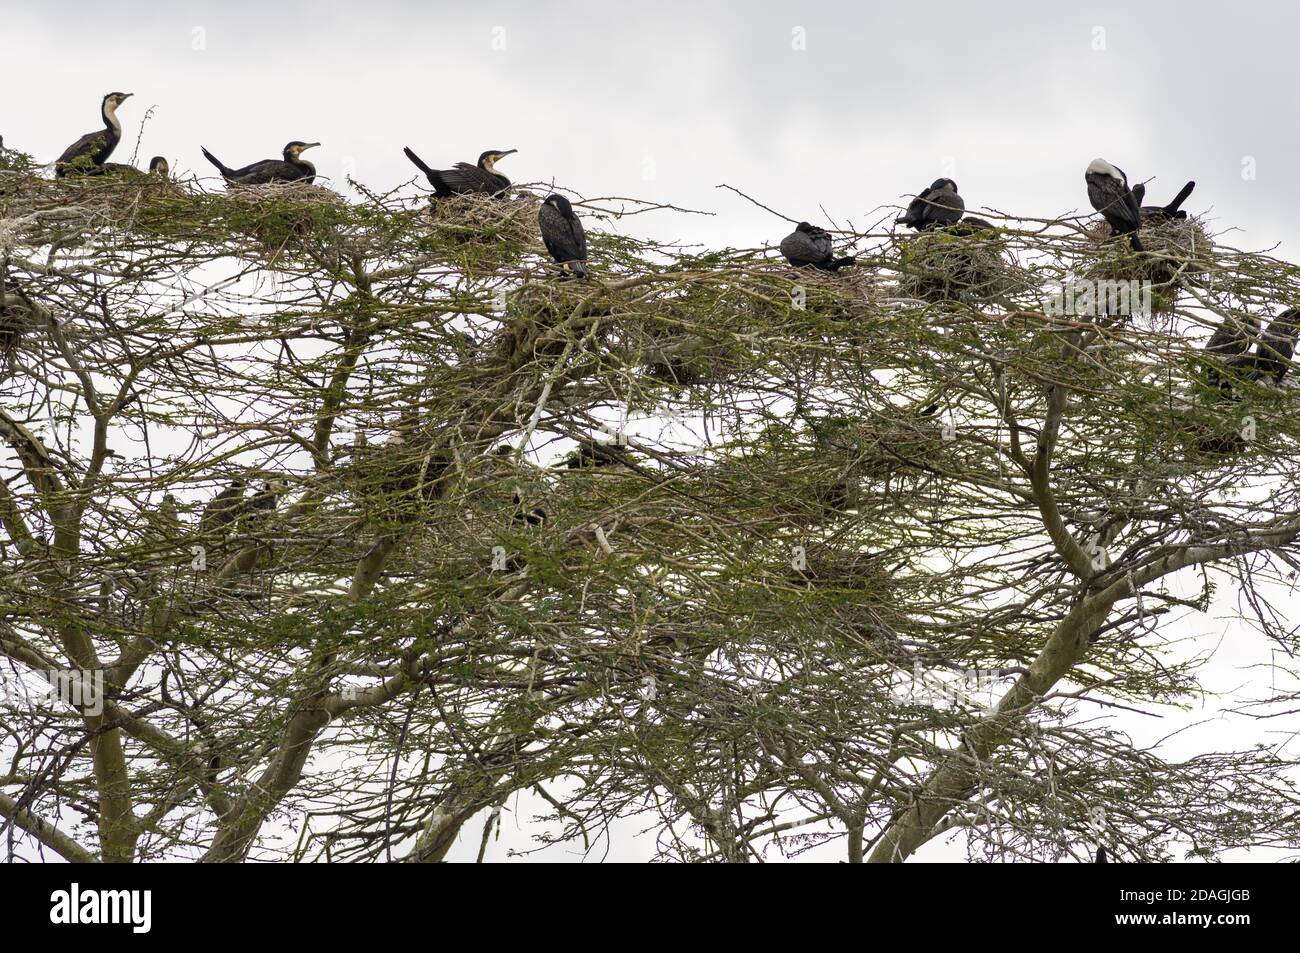 De grands cormorans (Phalacrocorax carbo) nichés dans un grand acacia, lac Naivasha, Kenya Banque D'Images